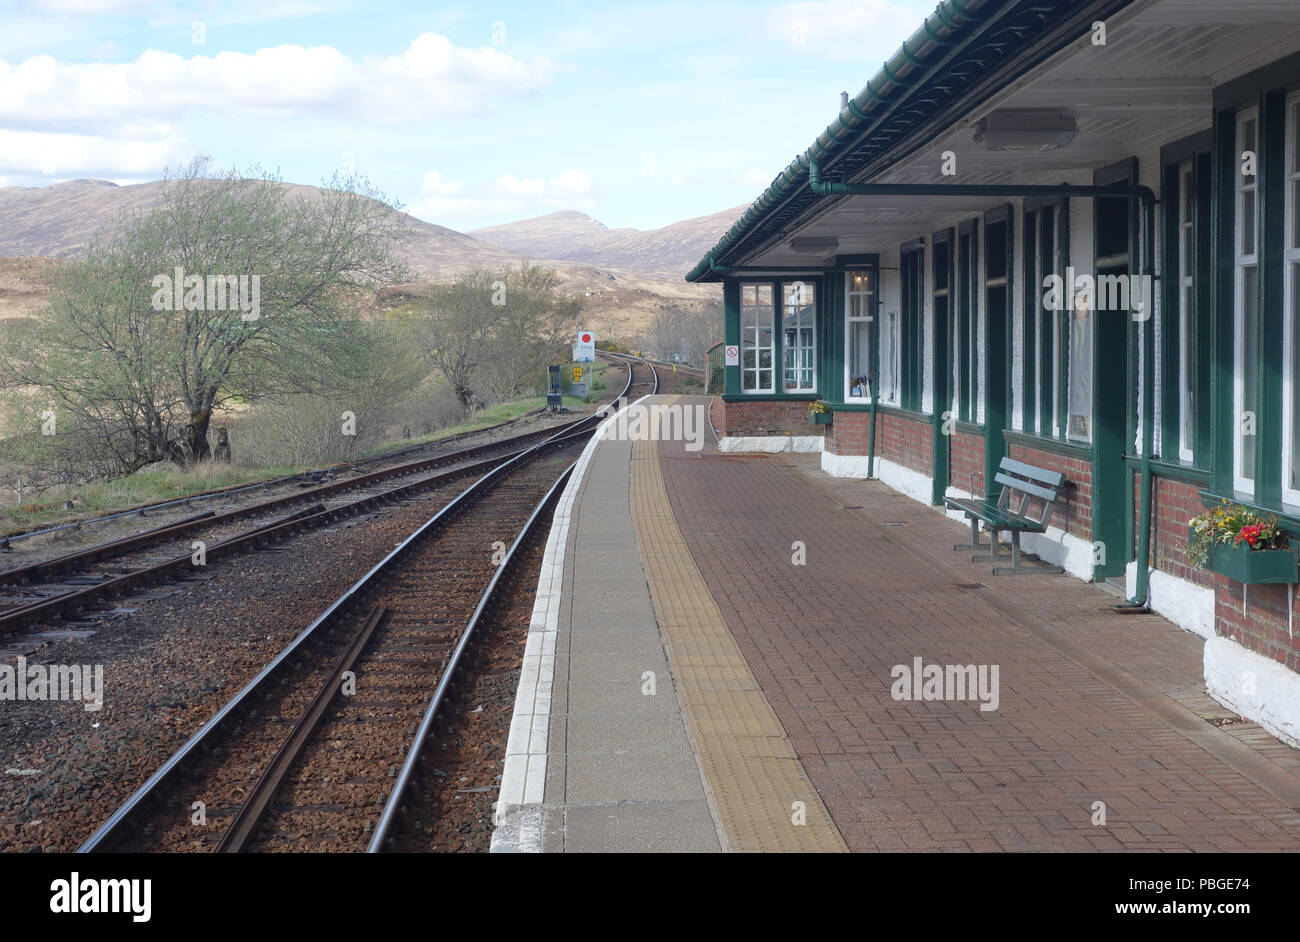 La gare de Rannoch sur Rannoch Moor une partie de la West Highland Line,Scottish Highlands, Ecosse, Royaume-Uni. Banque D'Images